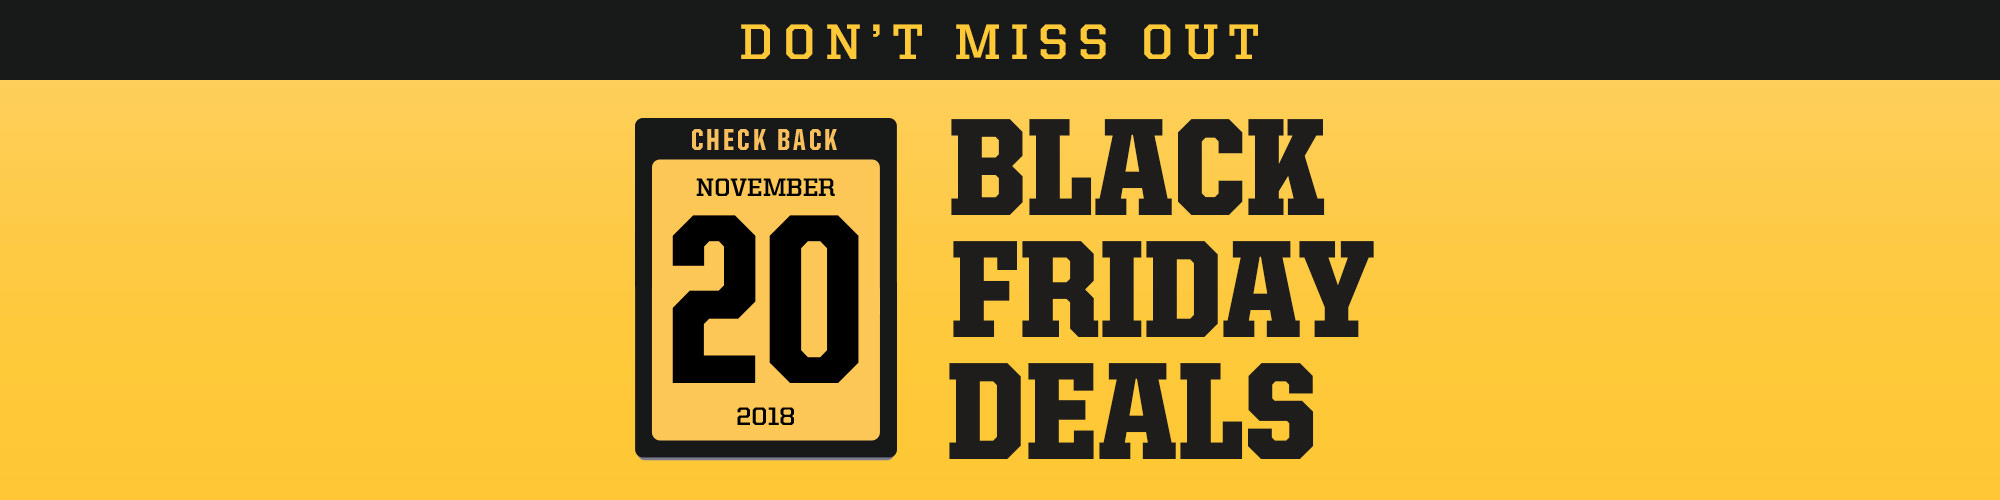 Check Back November 20, 2018 for more Black Friday Deals. 